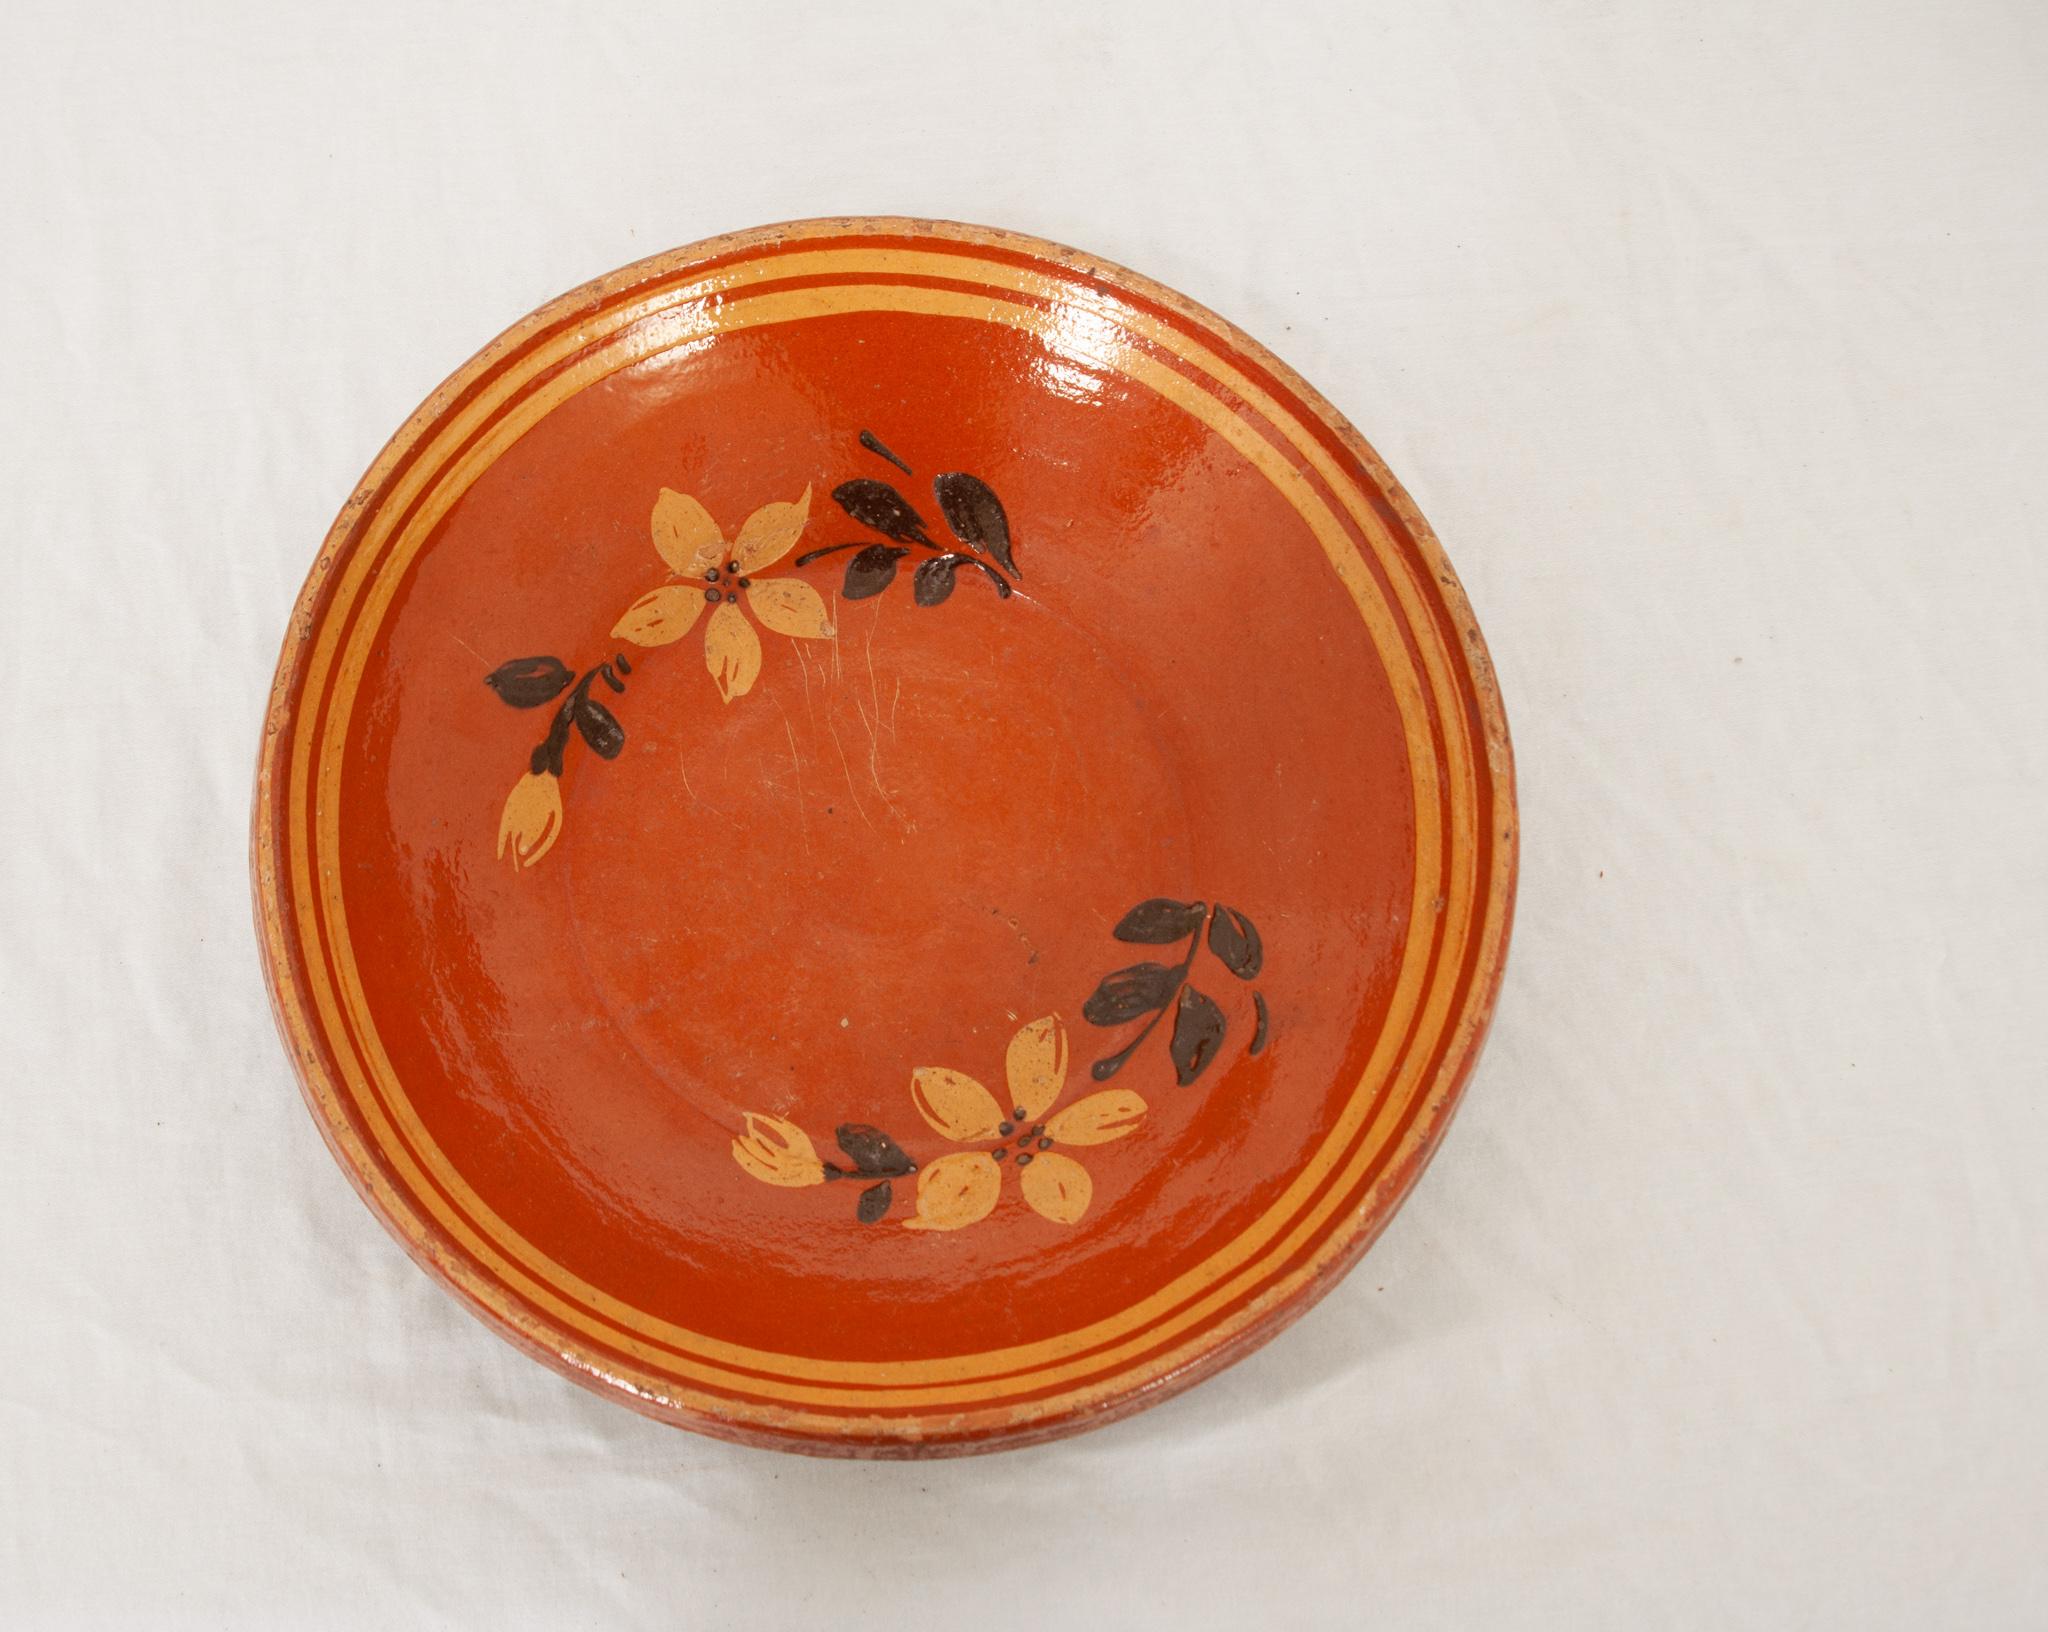 Un joli bol en poterie française du 19e siècle aux couleurs vives et aux motifs floraux. Ce bol a été émaillé d'un orange vif et chaud avec une bordure jaune maïs sur le bord et incorporé dans les fleurs délicates peintes à l'intérieur. Il s'agit